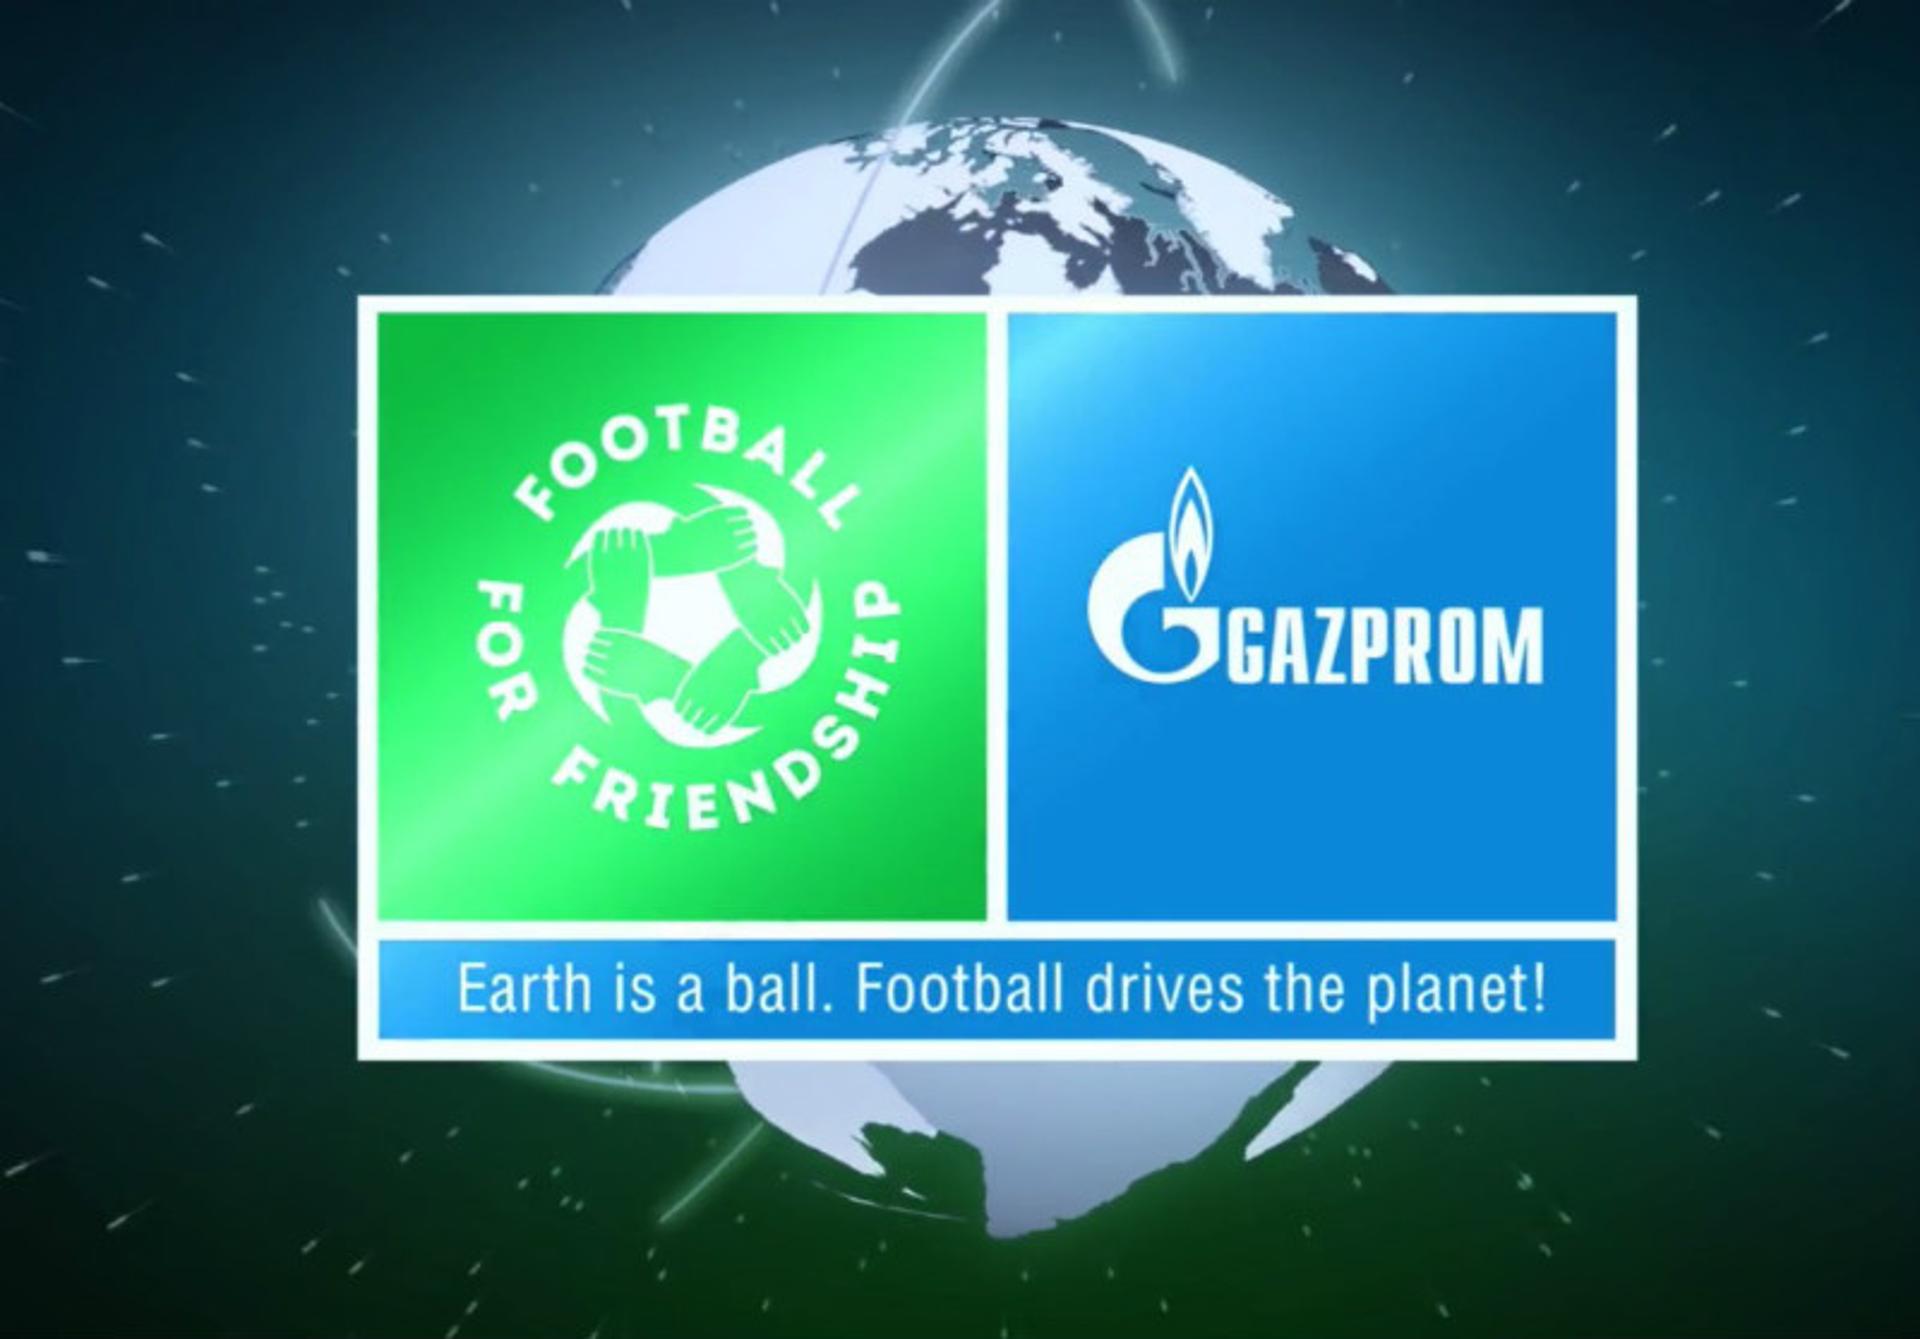 Programa é desenvolvido pela Gazprom, parceiro da FIFA e da Copa do Mundo de 2018